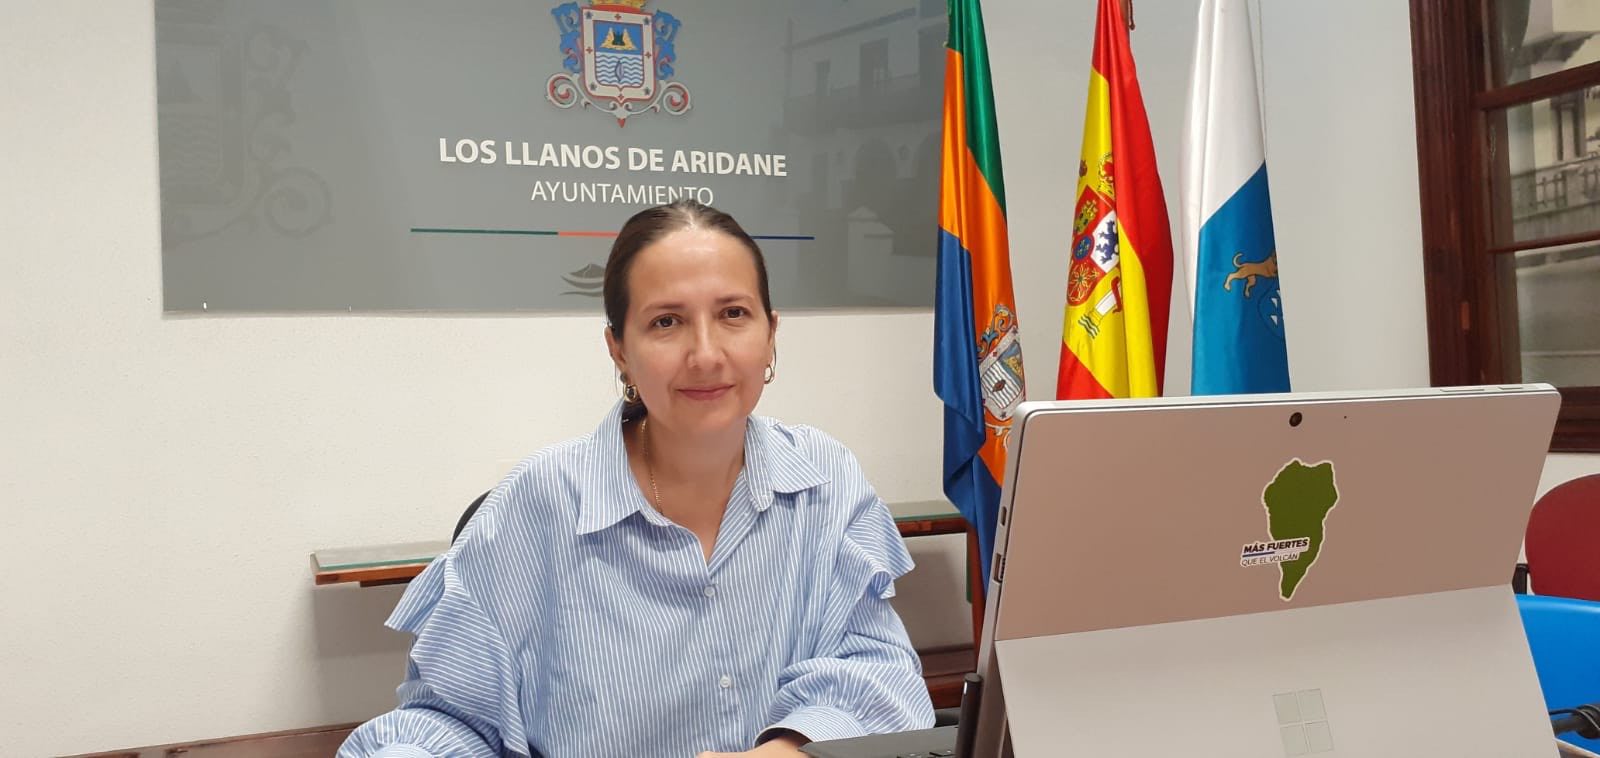 El Ayuntamiento de Los Llanos de Aridane aprueba la primera Relación de Puestos de Trabajo de su historia